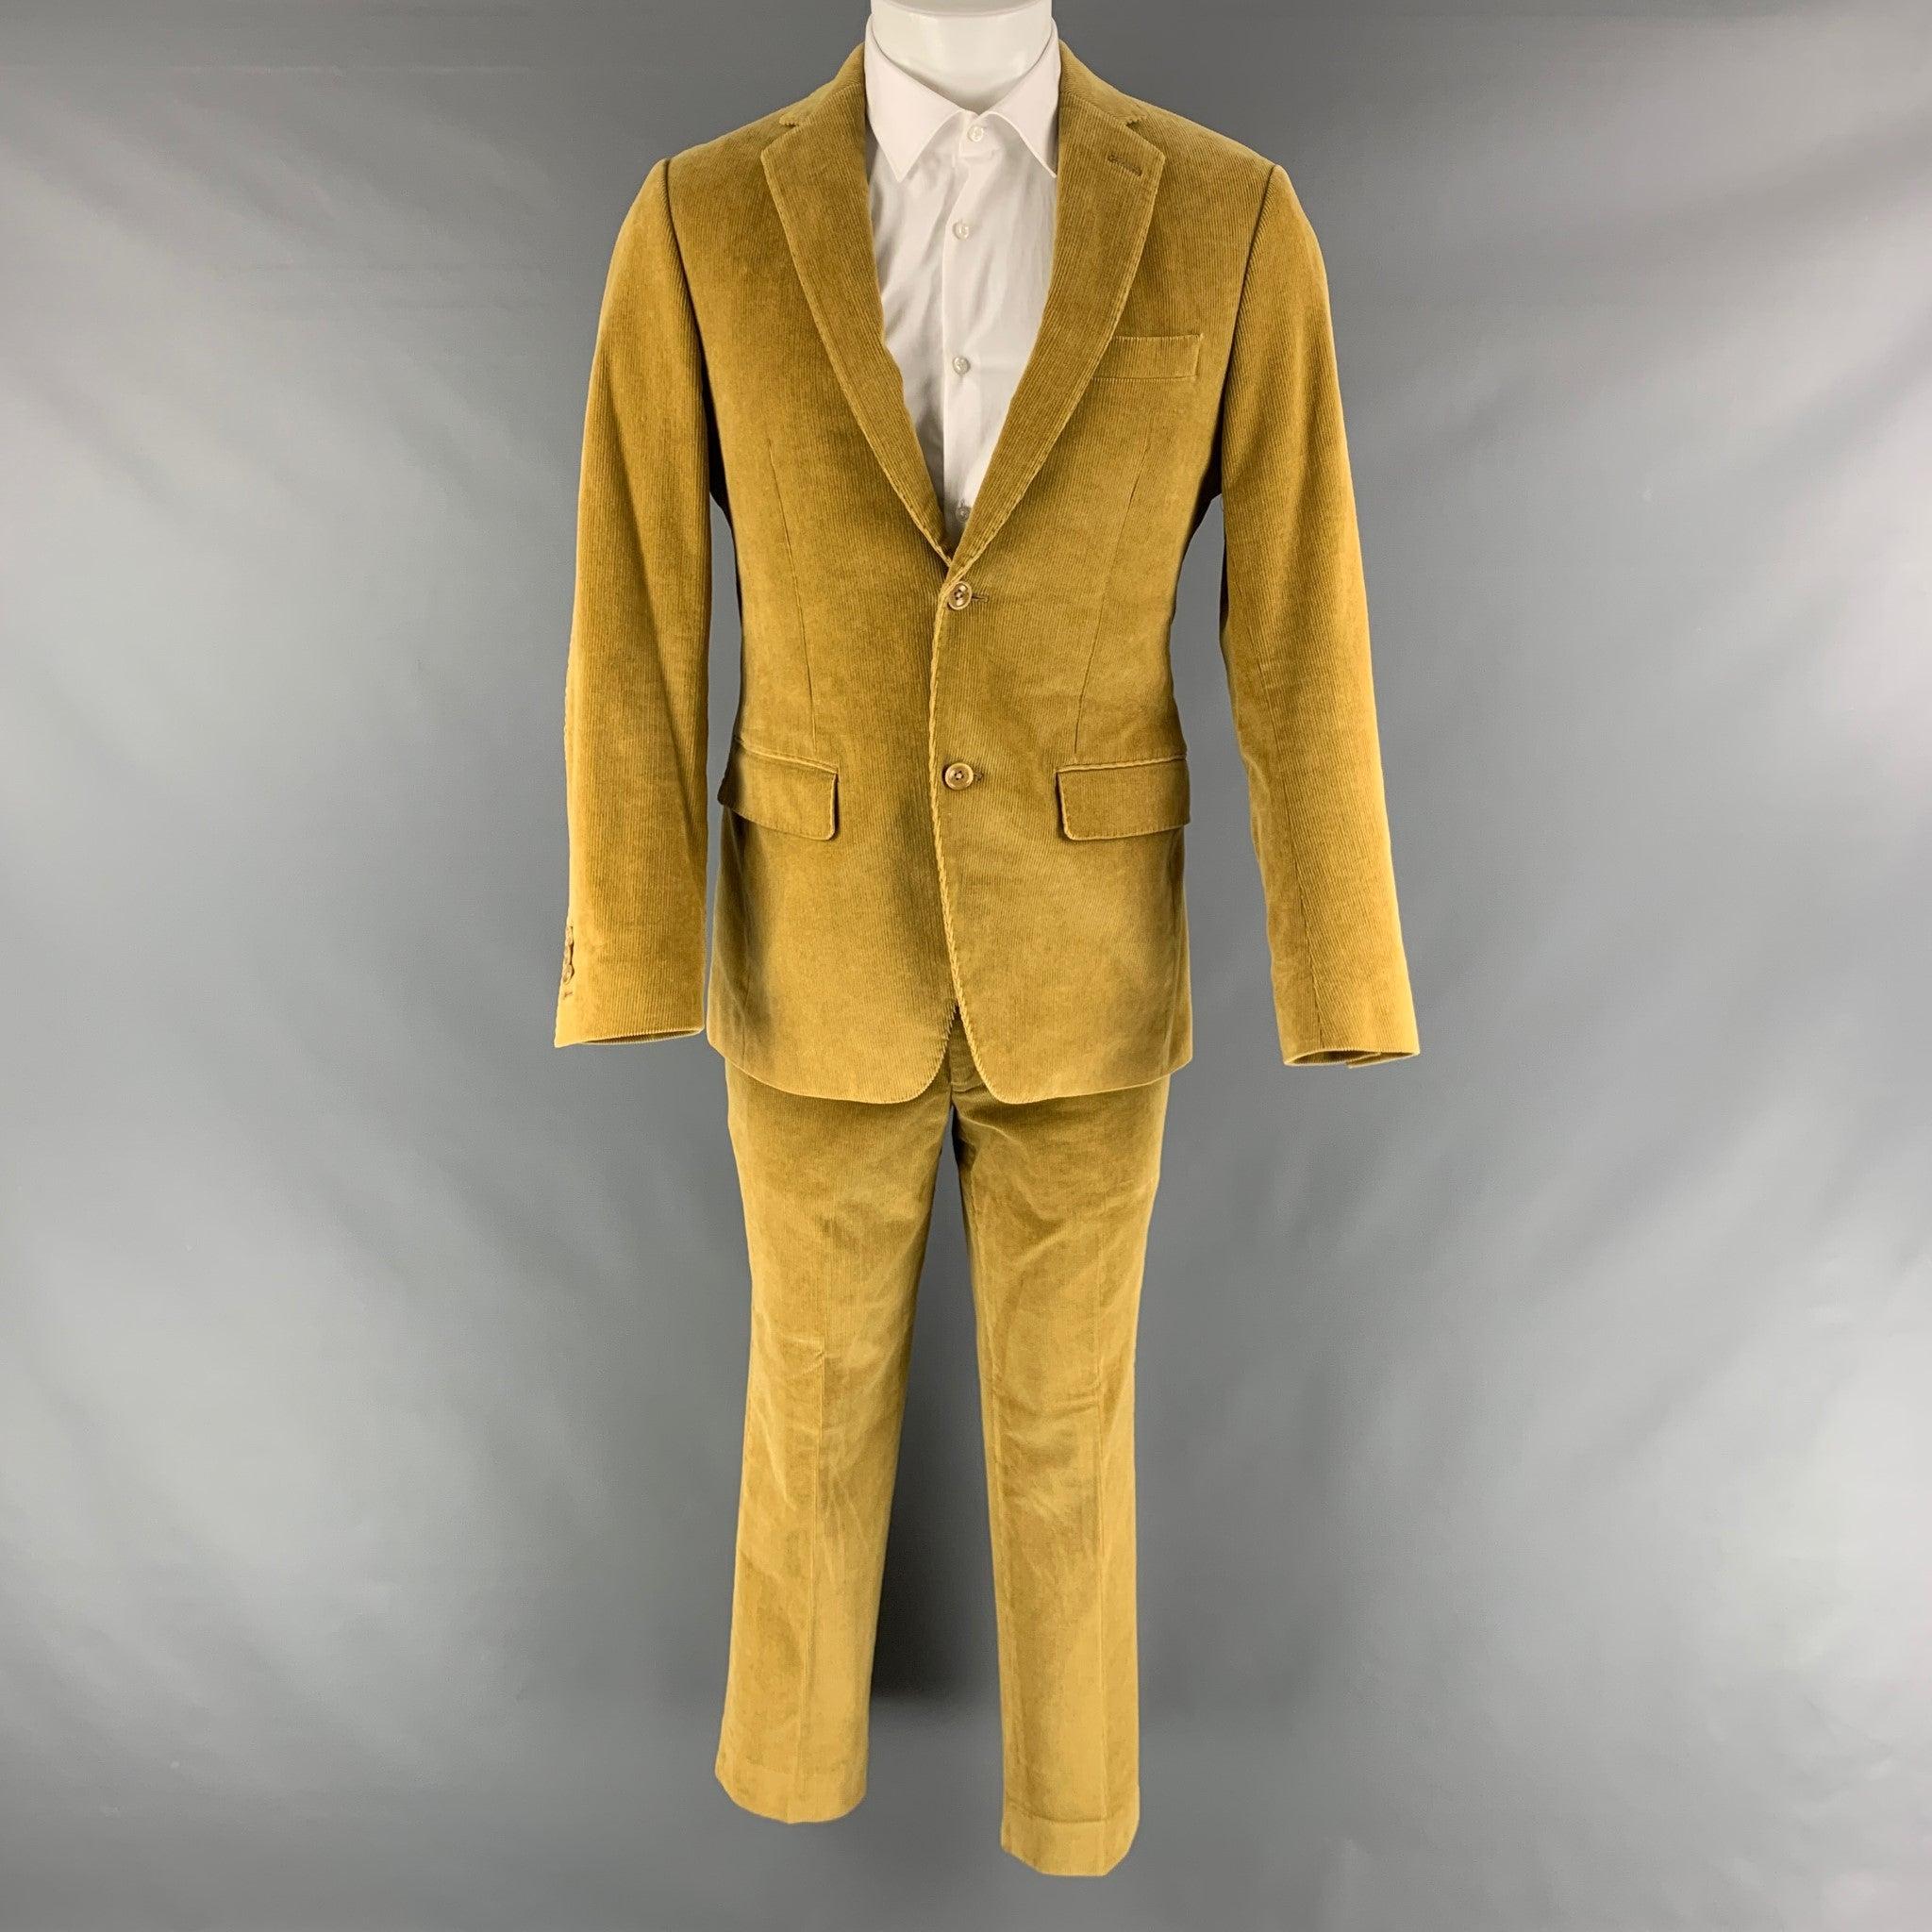 Le costume SAKS FIFTH AVENUE MODERN est en velours côtelé jaune avec une doublure complète et comprend un manteau de sport à un seul boutonnage avec un revers à cran et un pantalon assorti à devant plat. 

Marqué :   40 

Mesures : 
  -VesteEpaule :